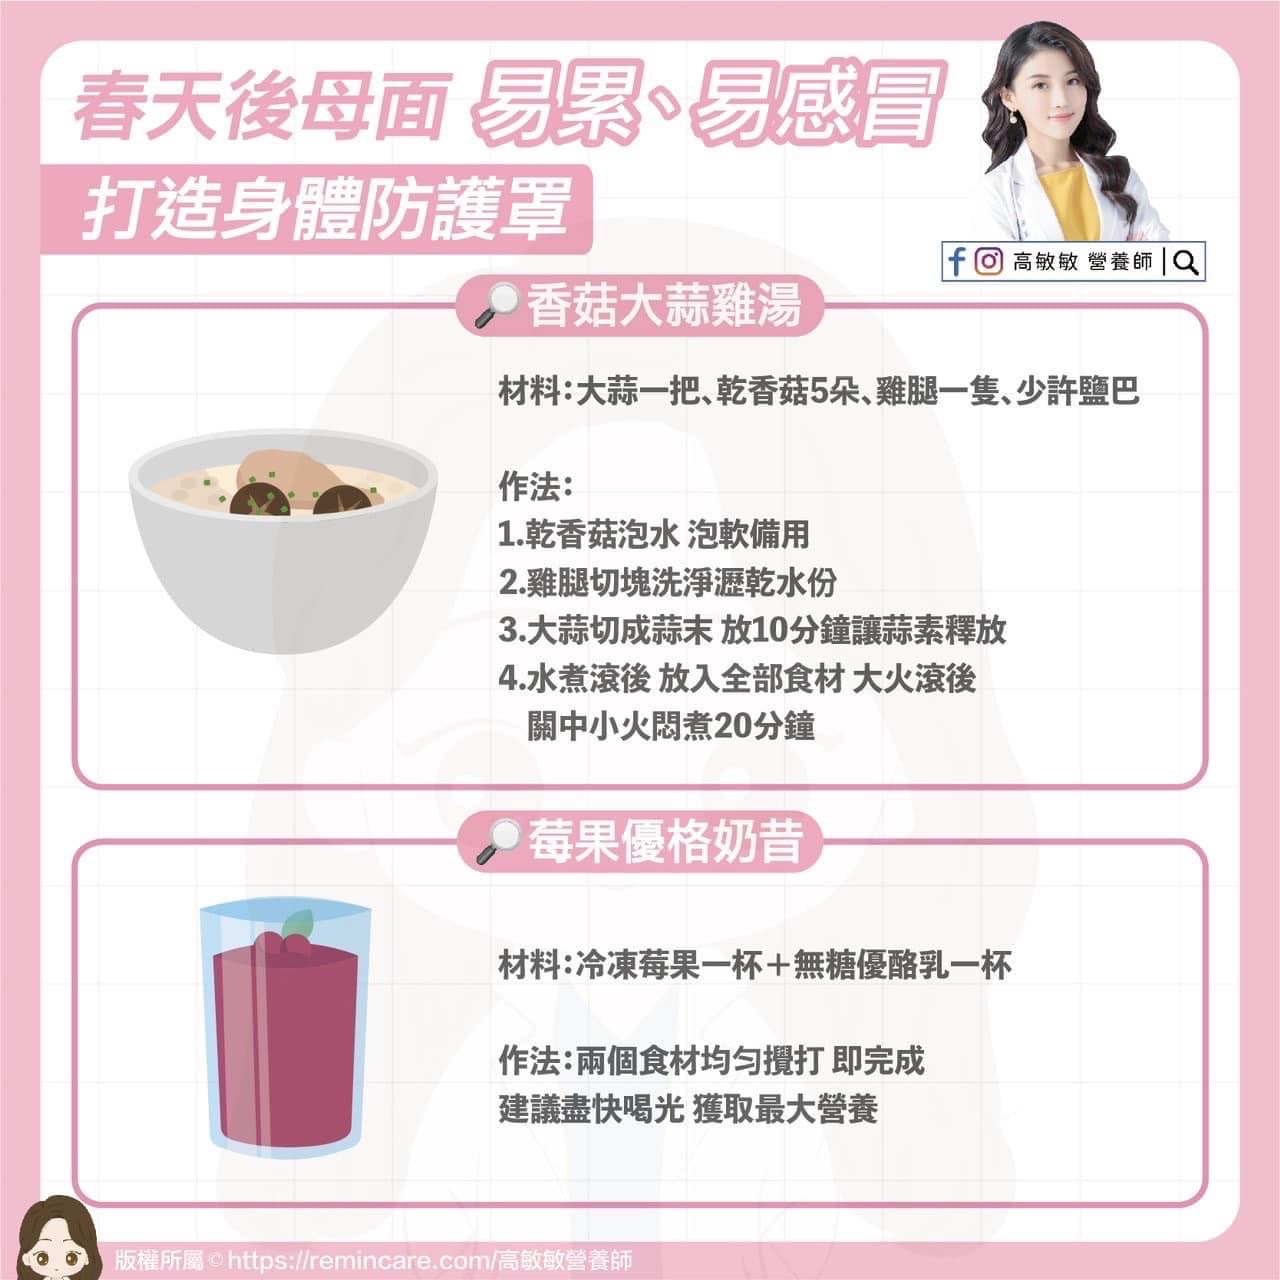 春天「後母面」，易累易感冒，營養師兩道私藏食譜保身體 - 台北郵報 | The Taipei Post